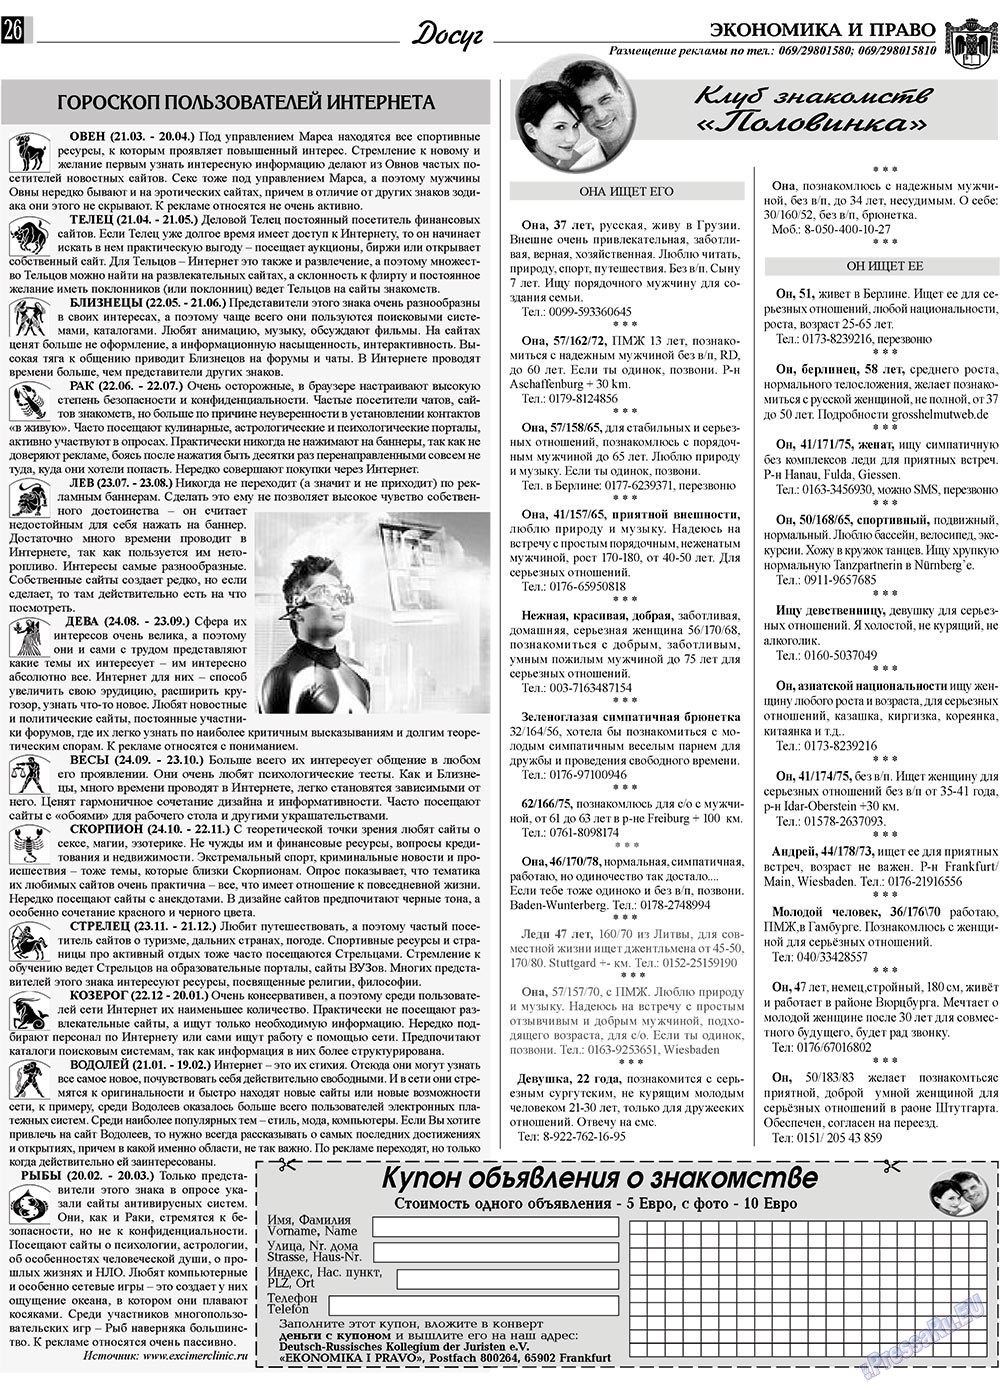 Экономика и право, газета. 2010 №3 стр.26